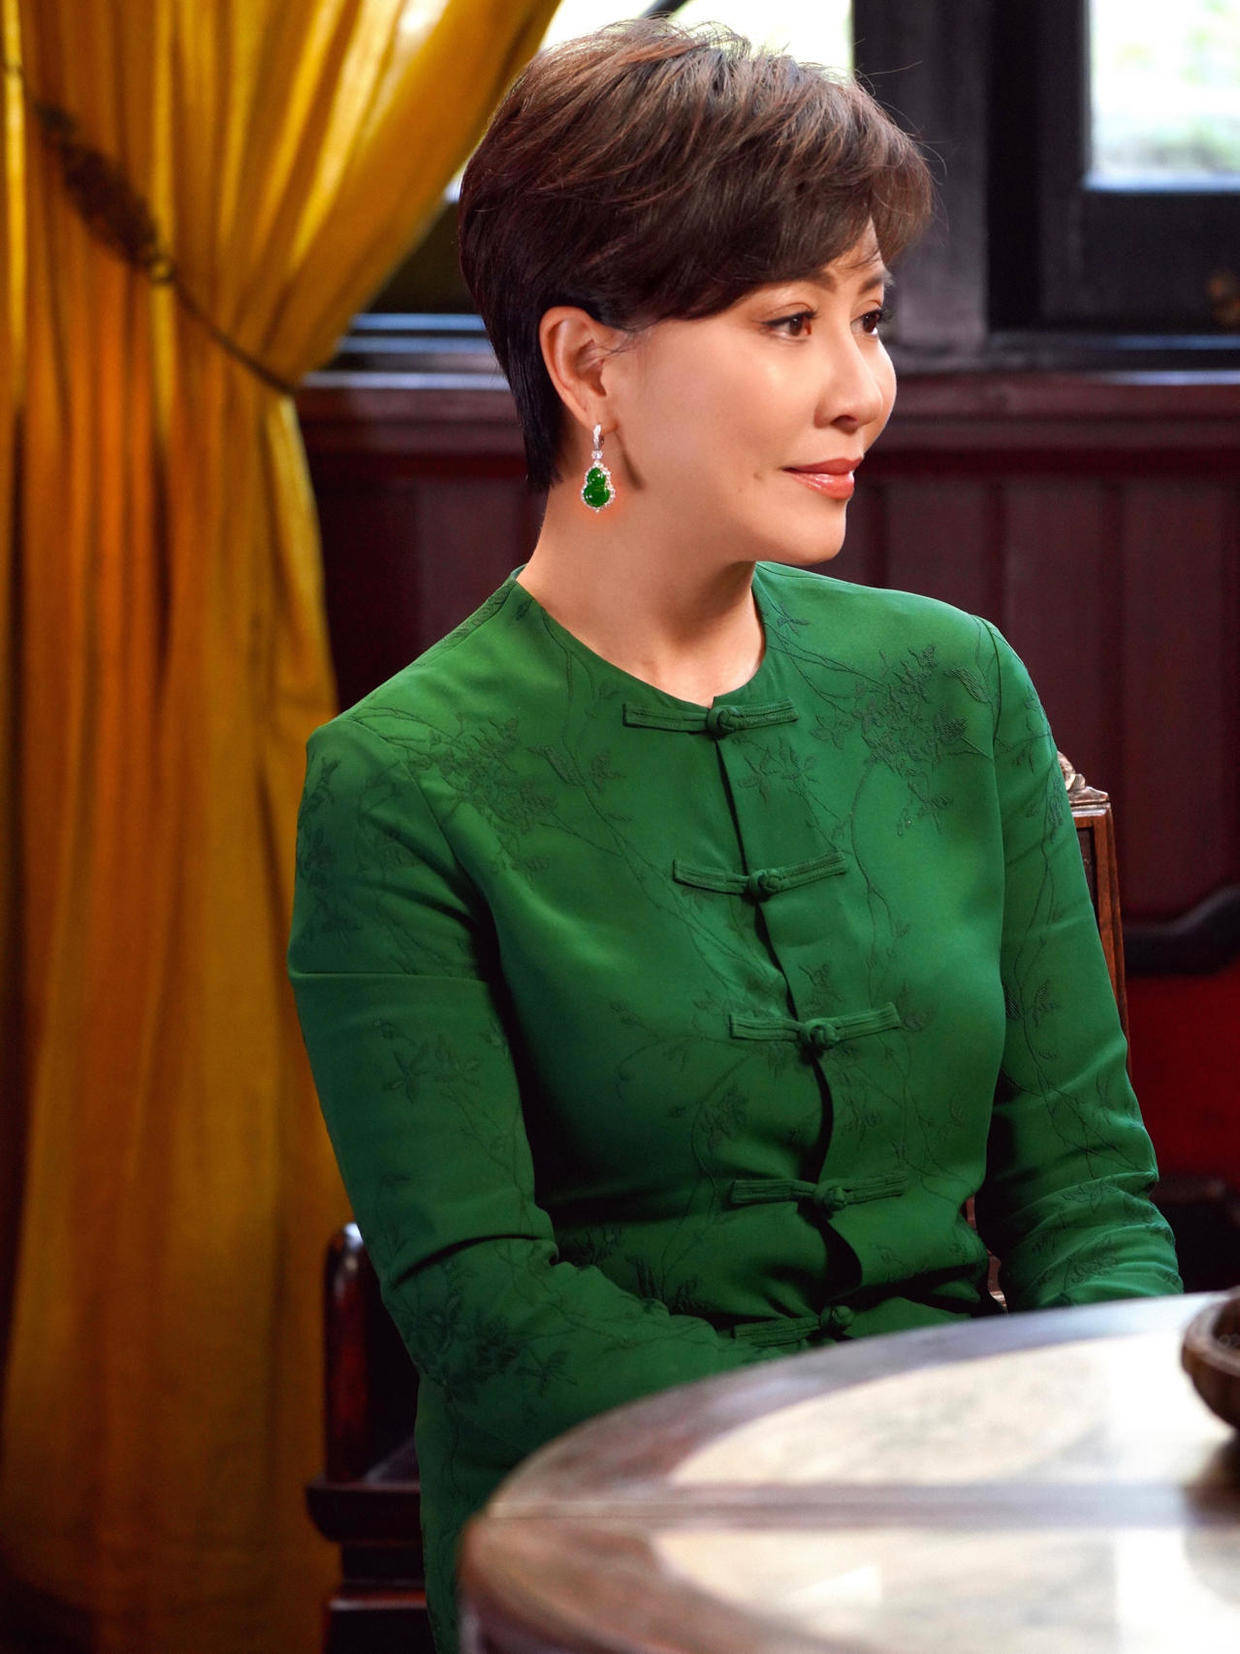 原创刘嘉玲55岁了,短发配绿色的唐装套装亮相,尽显优雅女性的庄重